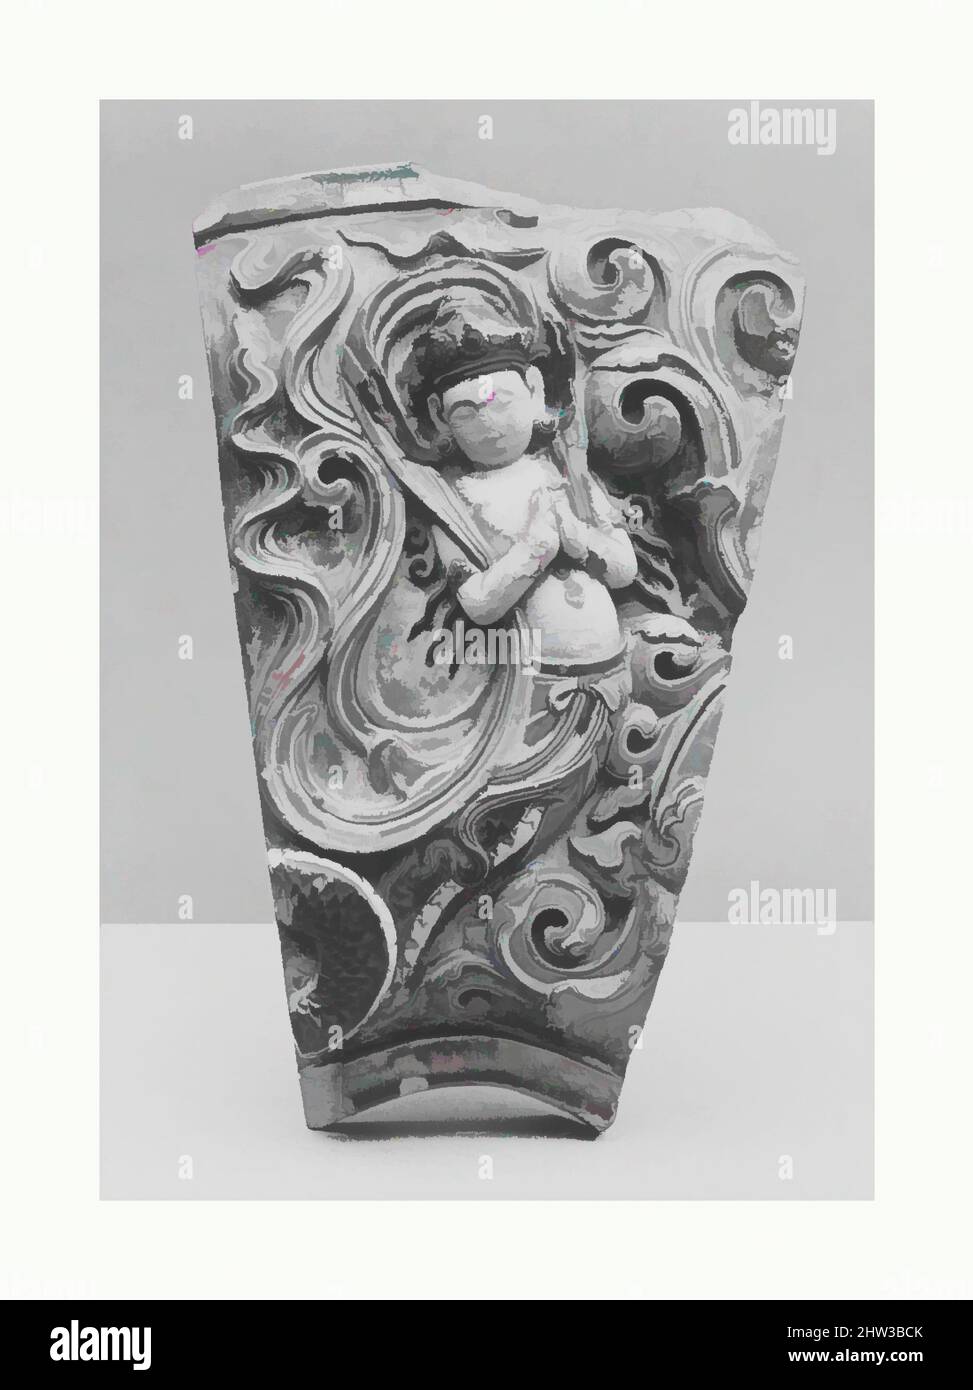 Art inspiré par le carrelage à Apsara, originaire de la « Pagode de porcelaine », dynastie Ming (1368–1644), période Yongle (1403–24), Chine, grès avec glaçures colorées, H. 21 po. (53,3 cm) ; avec 13 1/4 po (33,7 cm), céramique, aujourd'hui détruite, la fameuse Pagode de porcelaine, une tour construite, des œuvres classiques modernisées par Artotop avec un peu de modernité. Formes, couleur et valeur, impact visuel accrocheur sur l'art émotions par la liberté d'œuvres d'art d'une manière contemporaine. Un message intemporel qui cherche une nouvelle direction créative. Artistes qui se tournent vers le support numérique et créent le NFT Artotop Banque D'Images